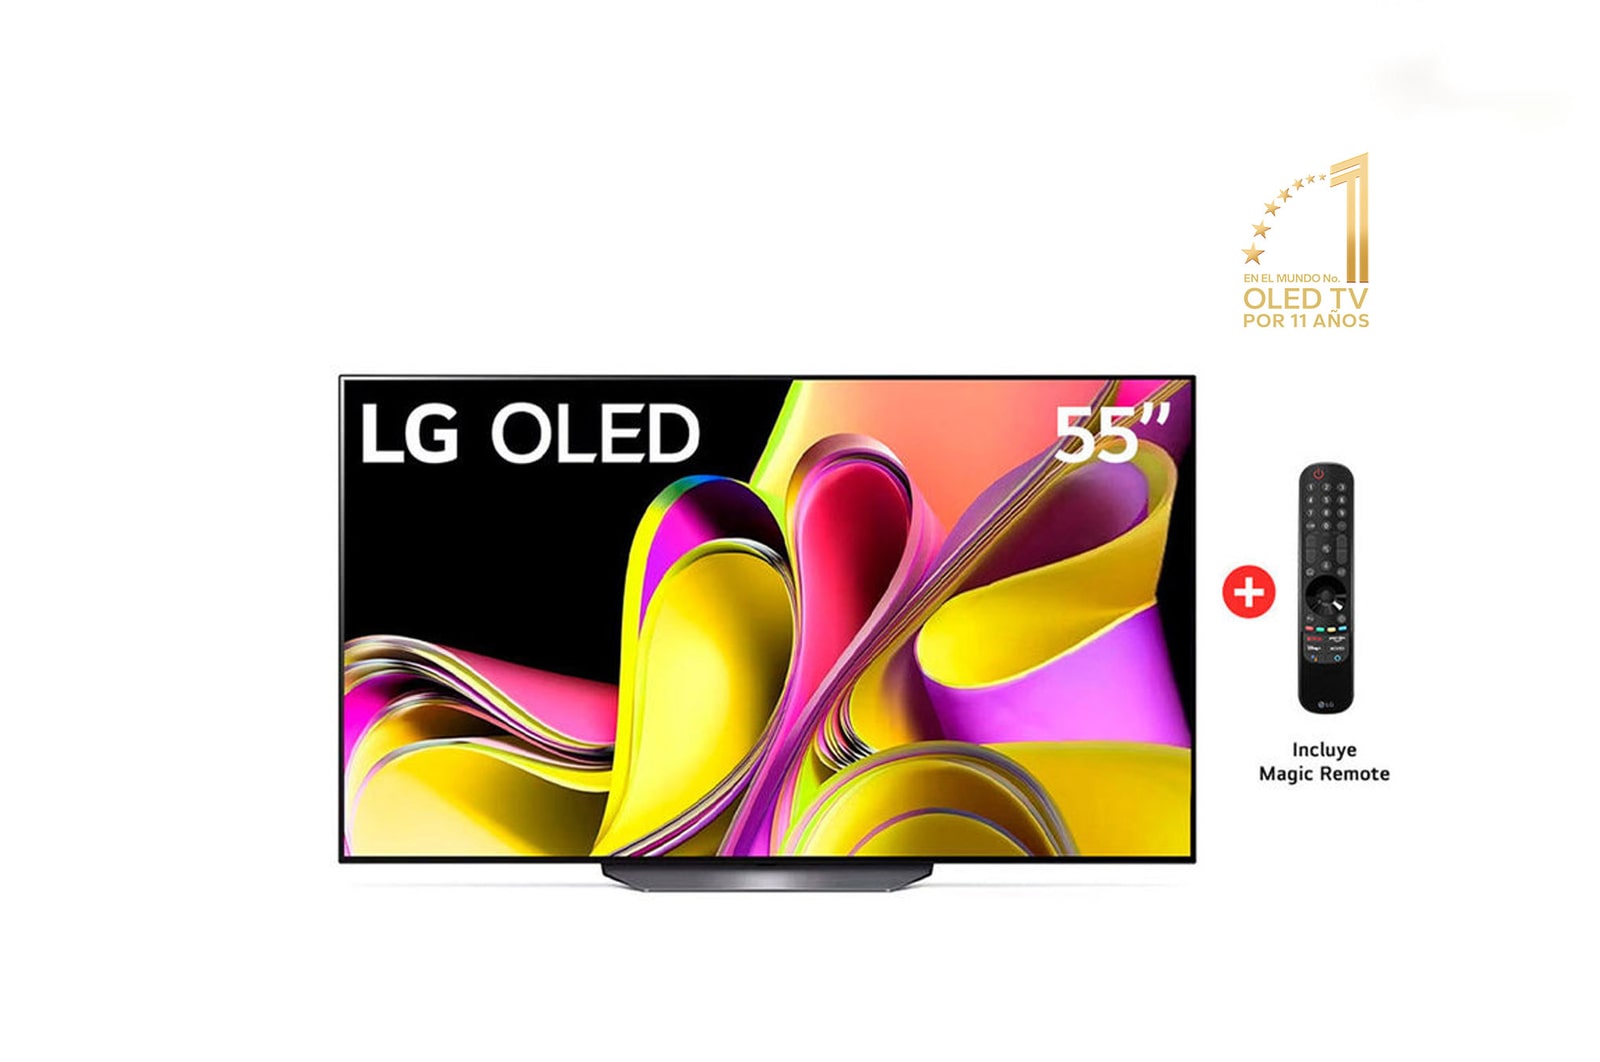 Comprar TV LG 4K OLED evo, GALLERY, 164cm (65), con soporte y servicio de  instalación en pared incluido - Tienda LG